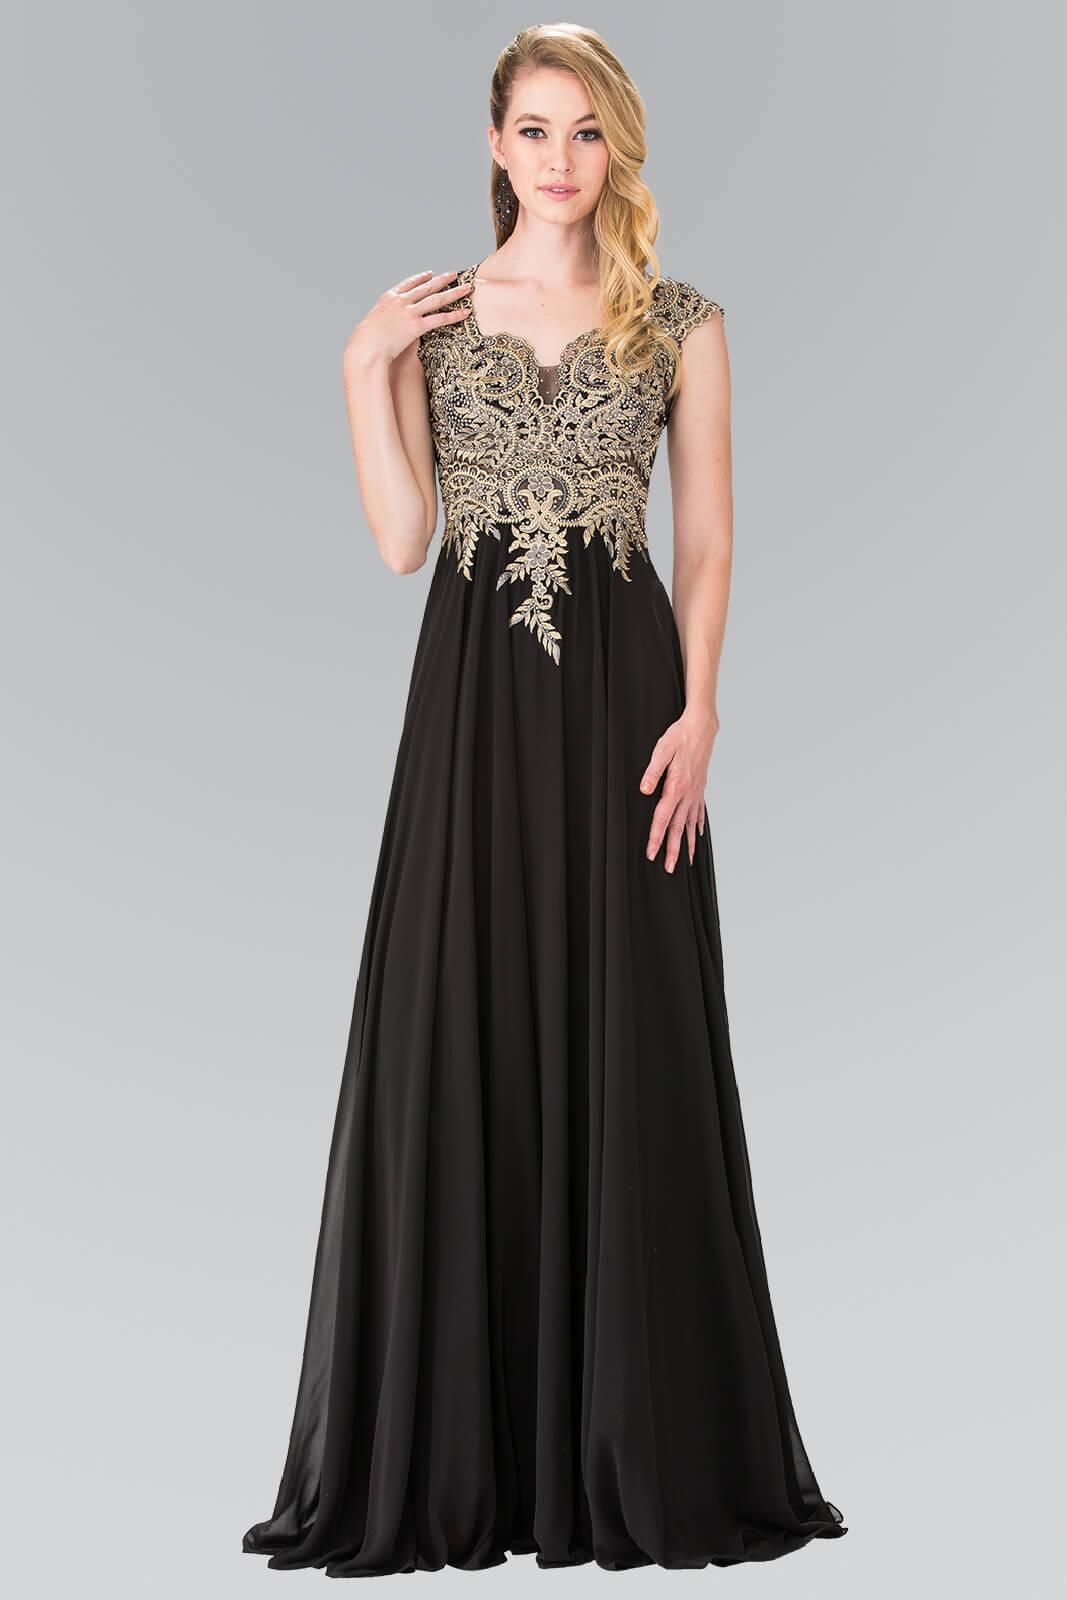 Prom Long Dress Formal Evening Gown - The Dress Outlet Elizabeth K